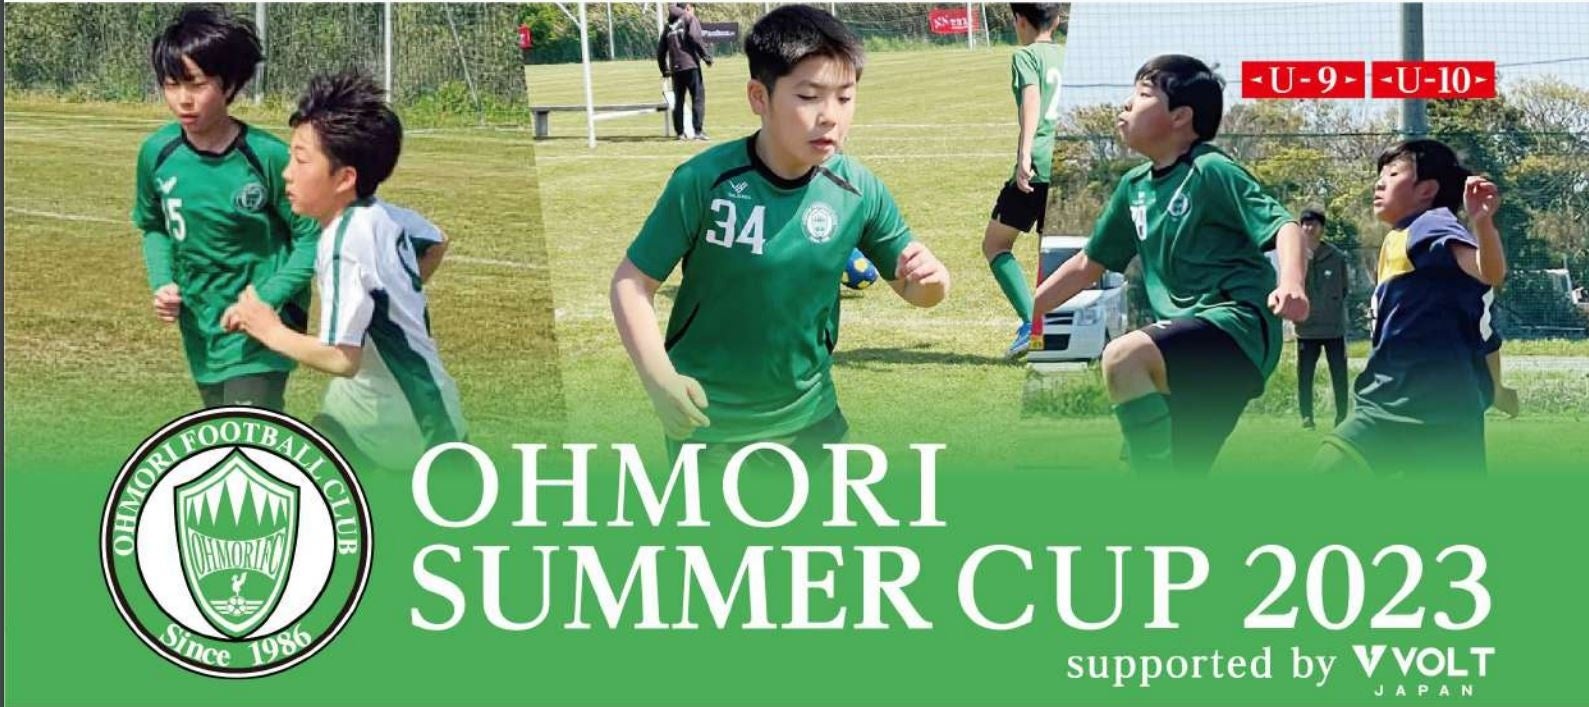 「全力本気」のサッカー合宿大会「OHMORI SUMMER CUP 2023 supported by VOLT」大森FCとセカンドステージにより、2023年8月26日・27日 群馬県尾瀬にて開催！